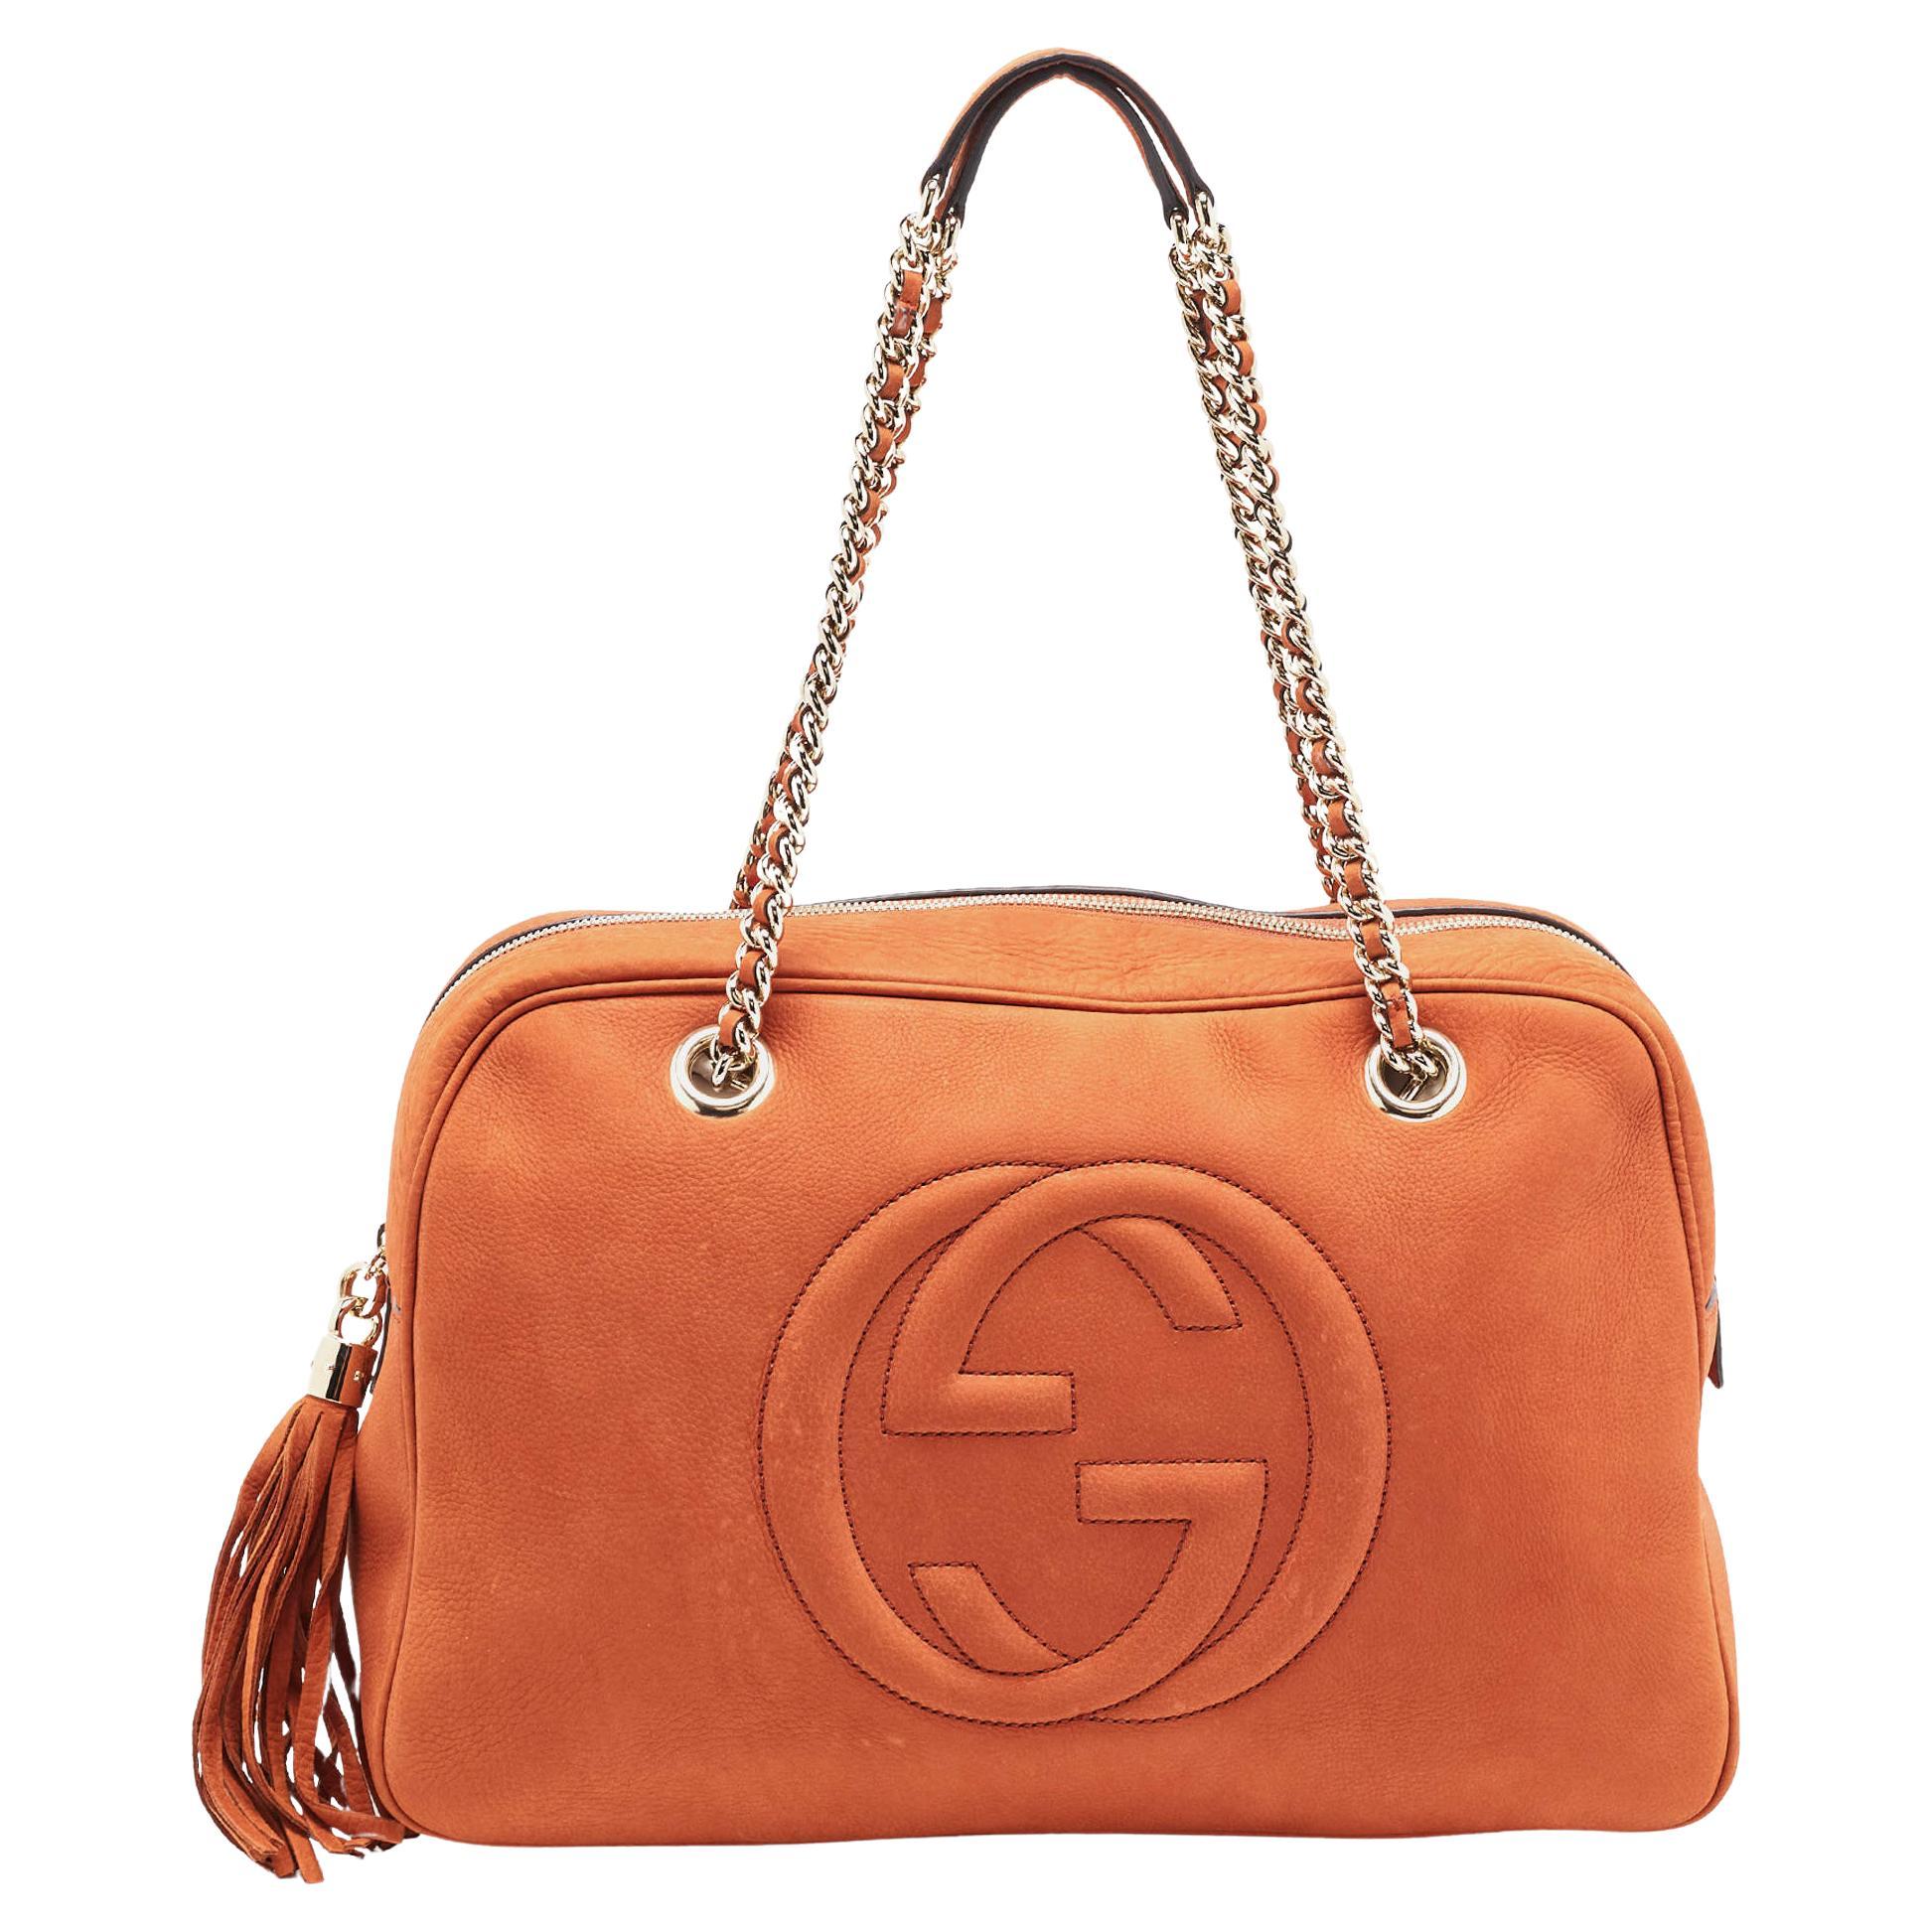 Gucci Brown Leather Large Soho Shoulder Bag